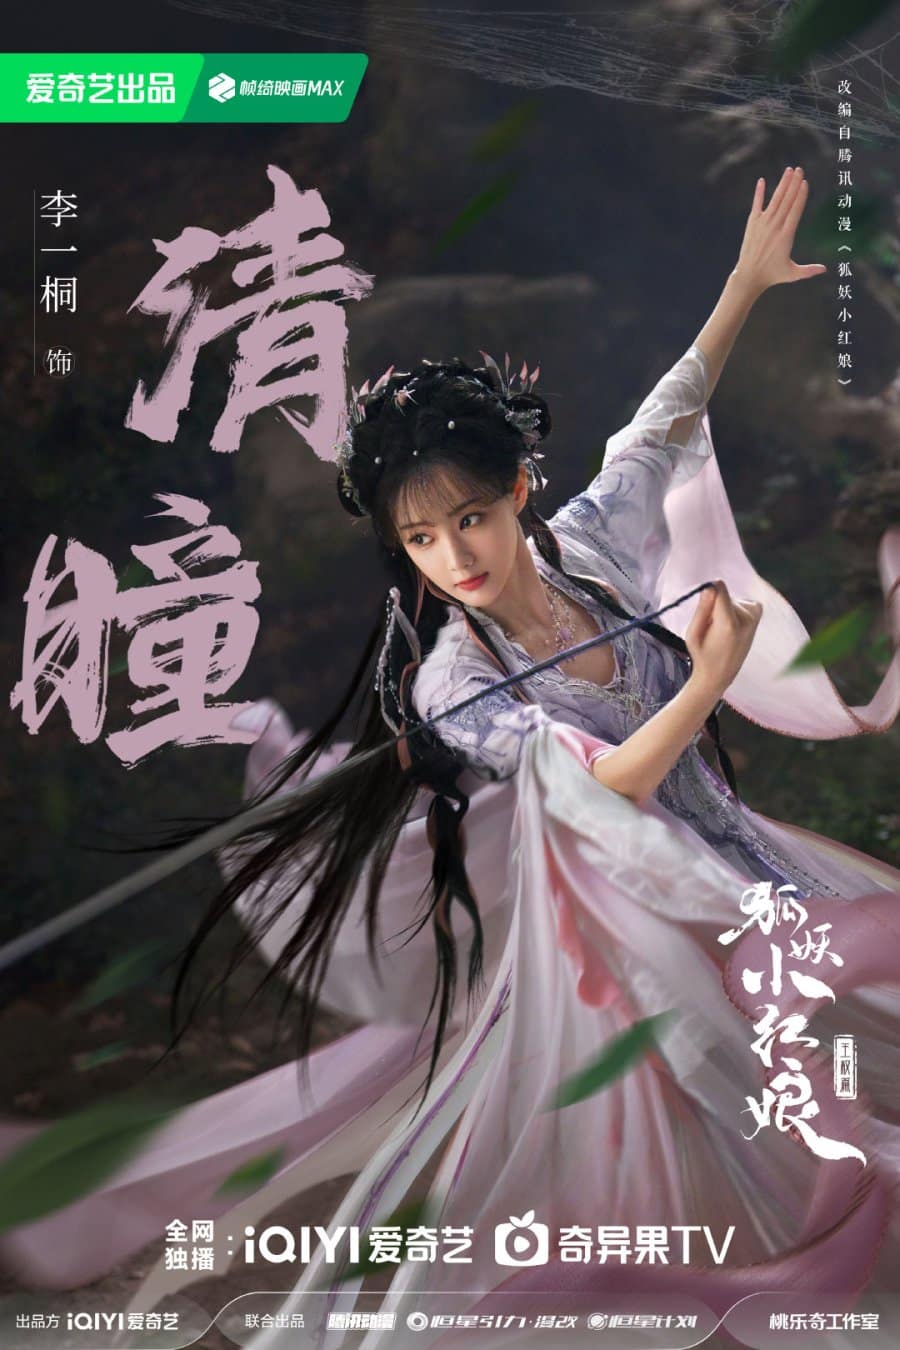 Чэн И и Ли И Тун в новых постерах к дораме "Лисьи свахи: Ван Цюань"